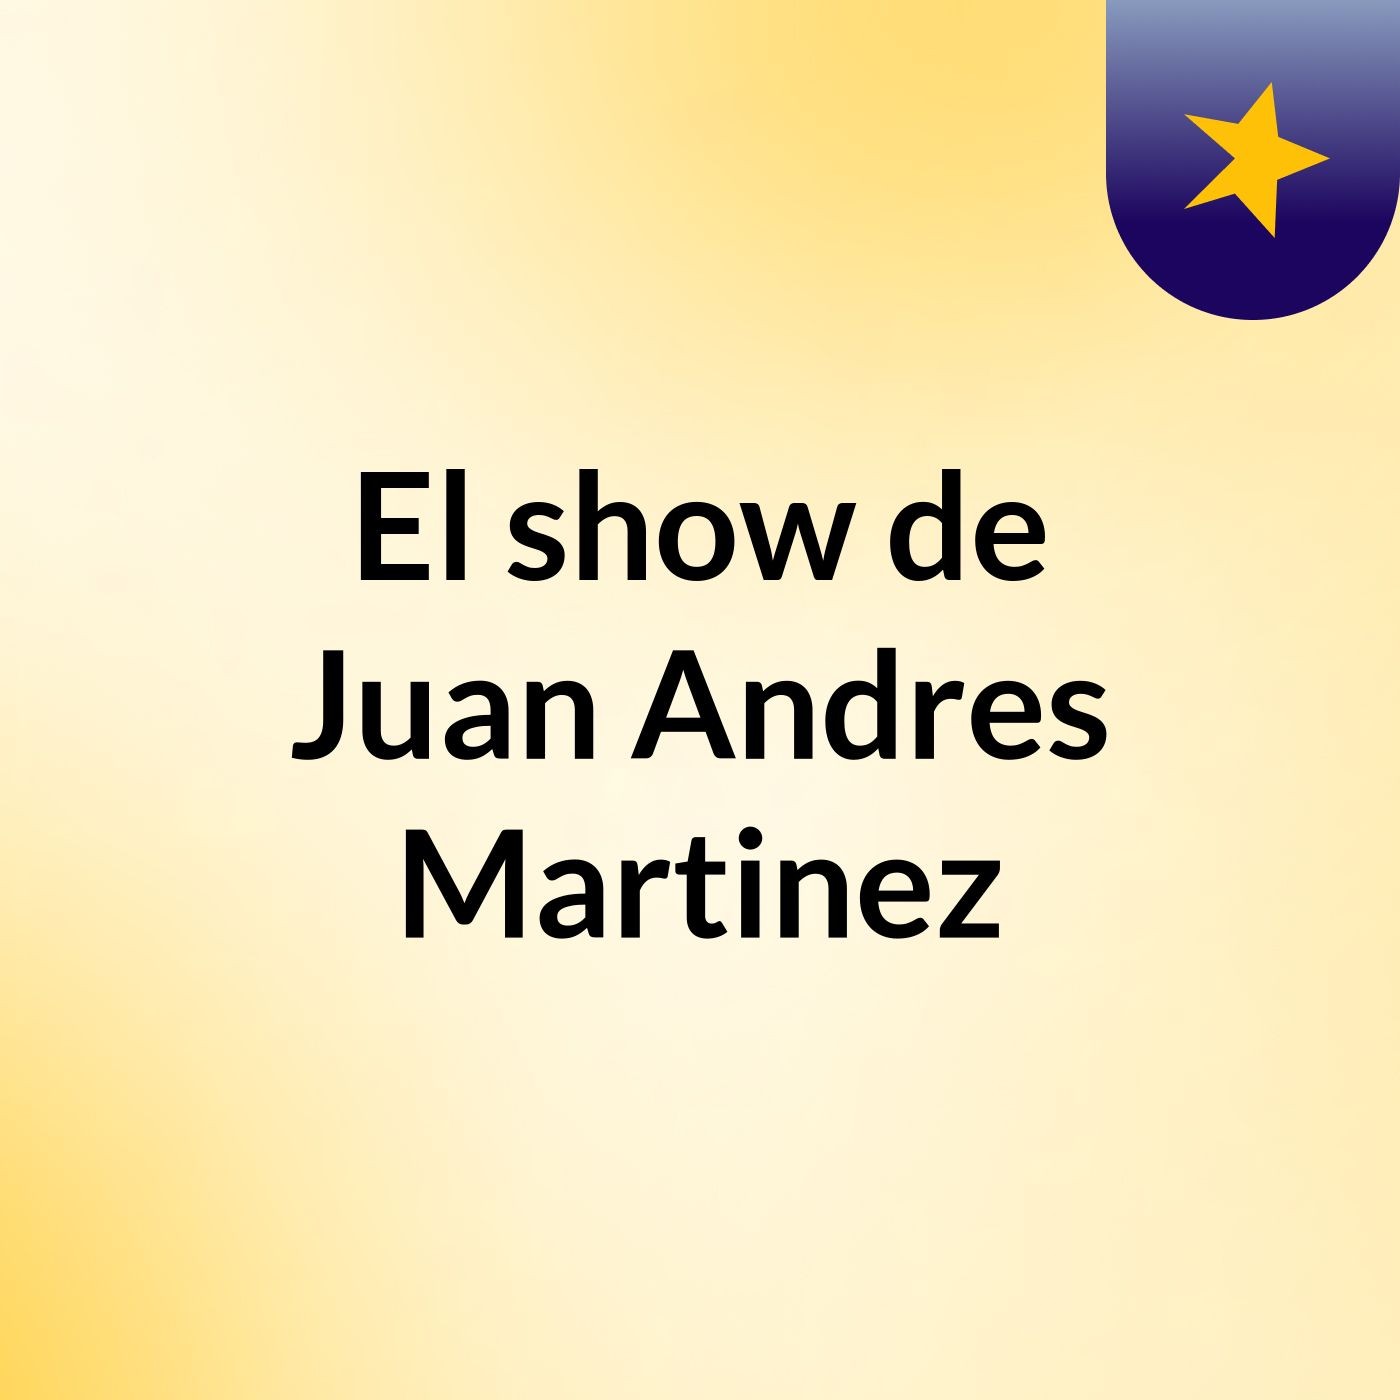 El show de Juan Andres Martinez